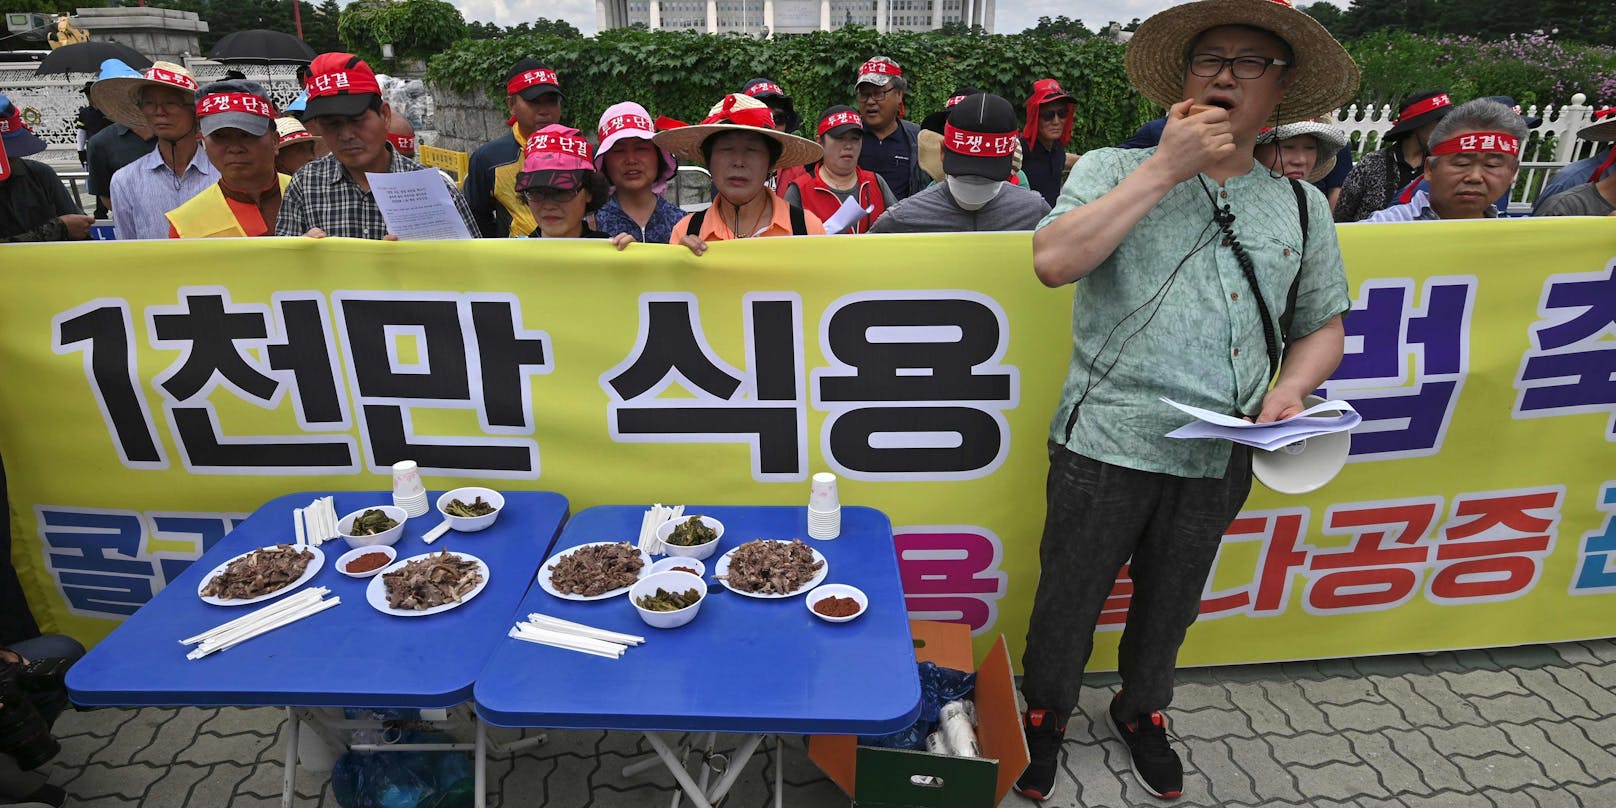 Eine Kundgebung von Hunde-Züchtern gegen Tierschutz-Proteste in Südkorea.